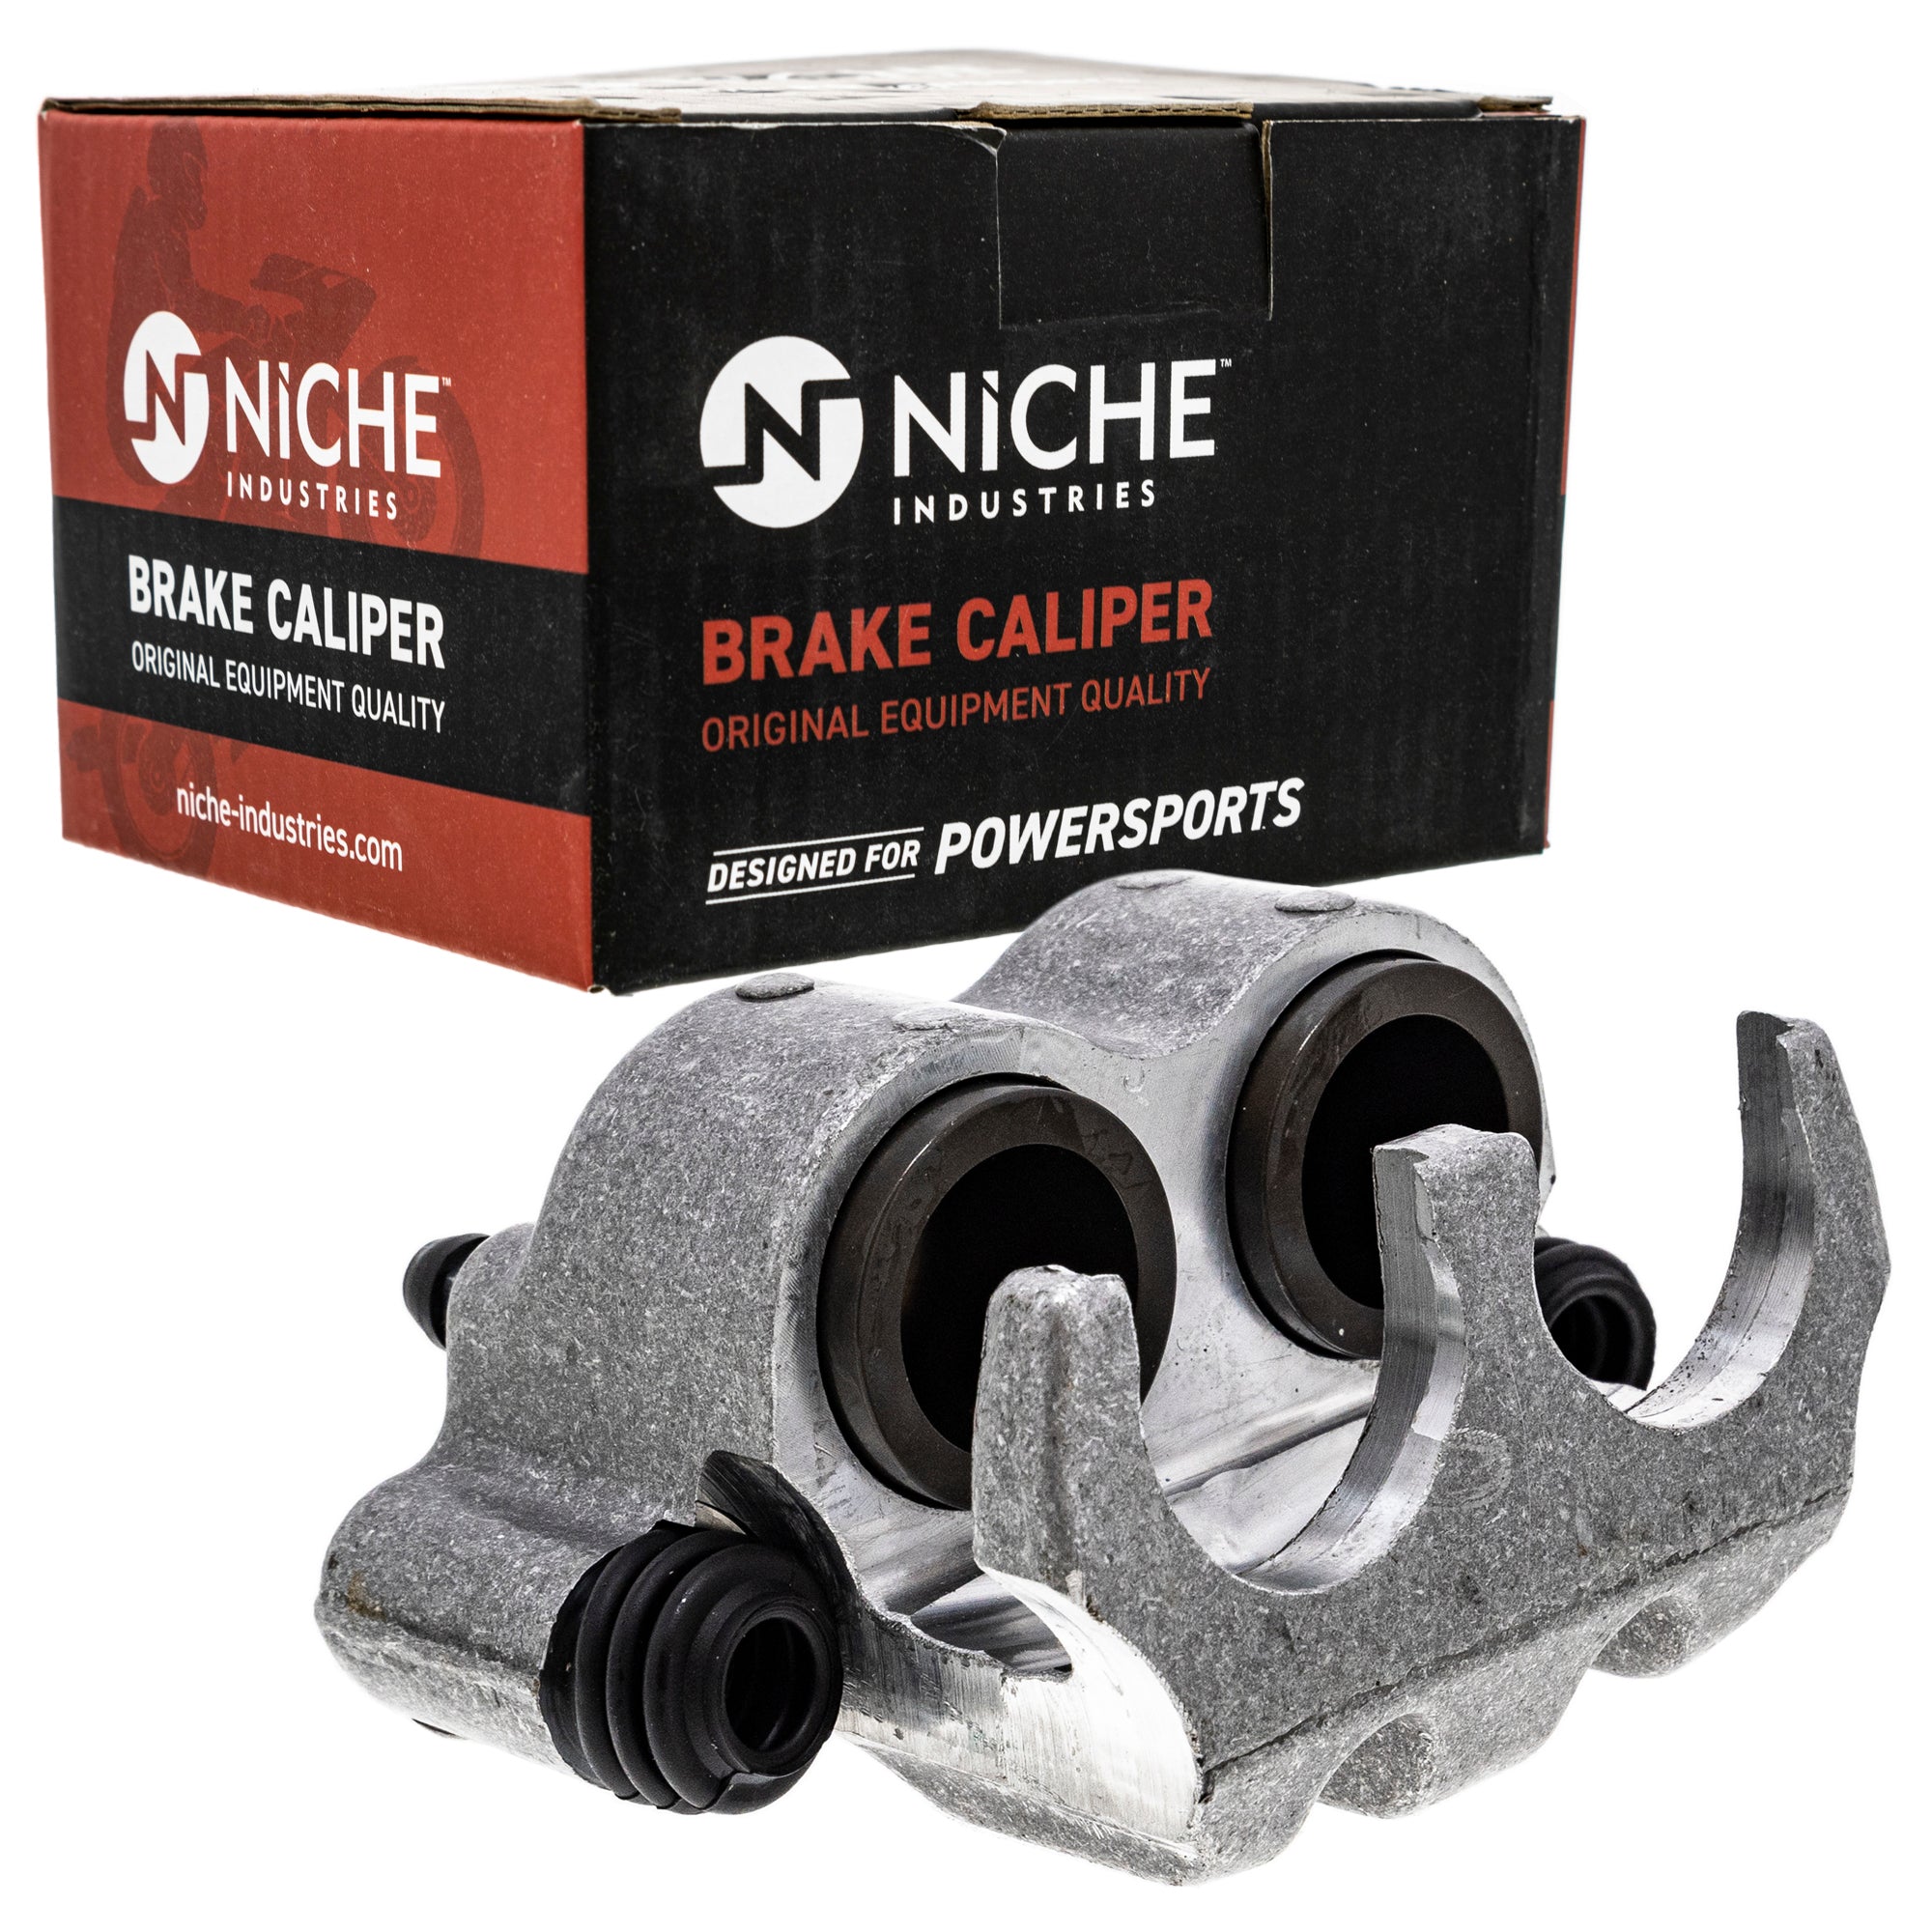 NICHE MK1008037 Brake Caliper